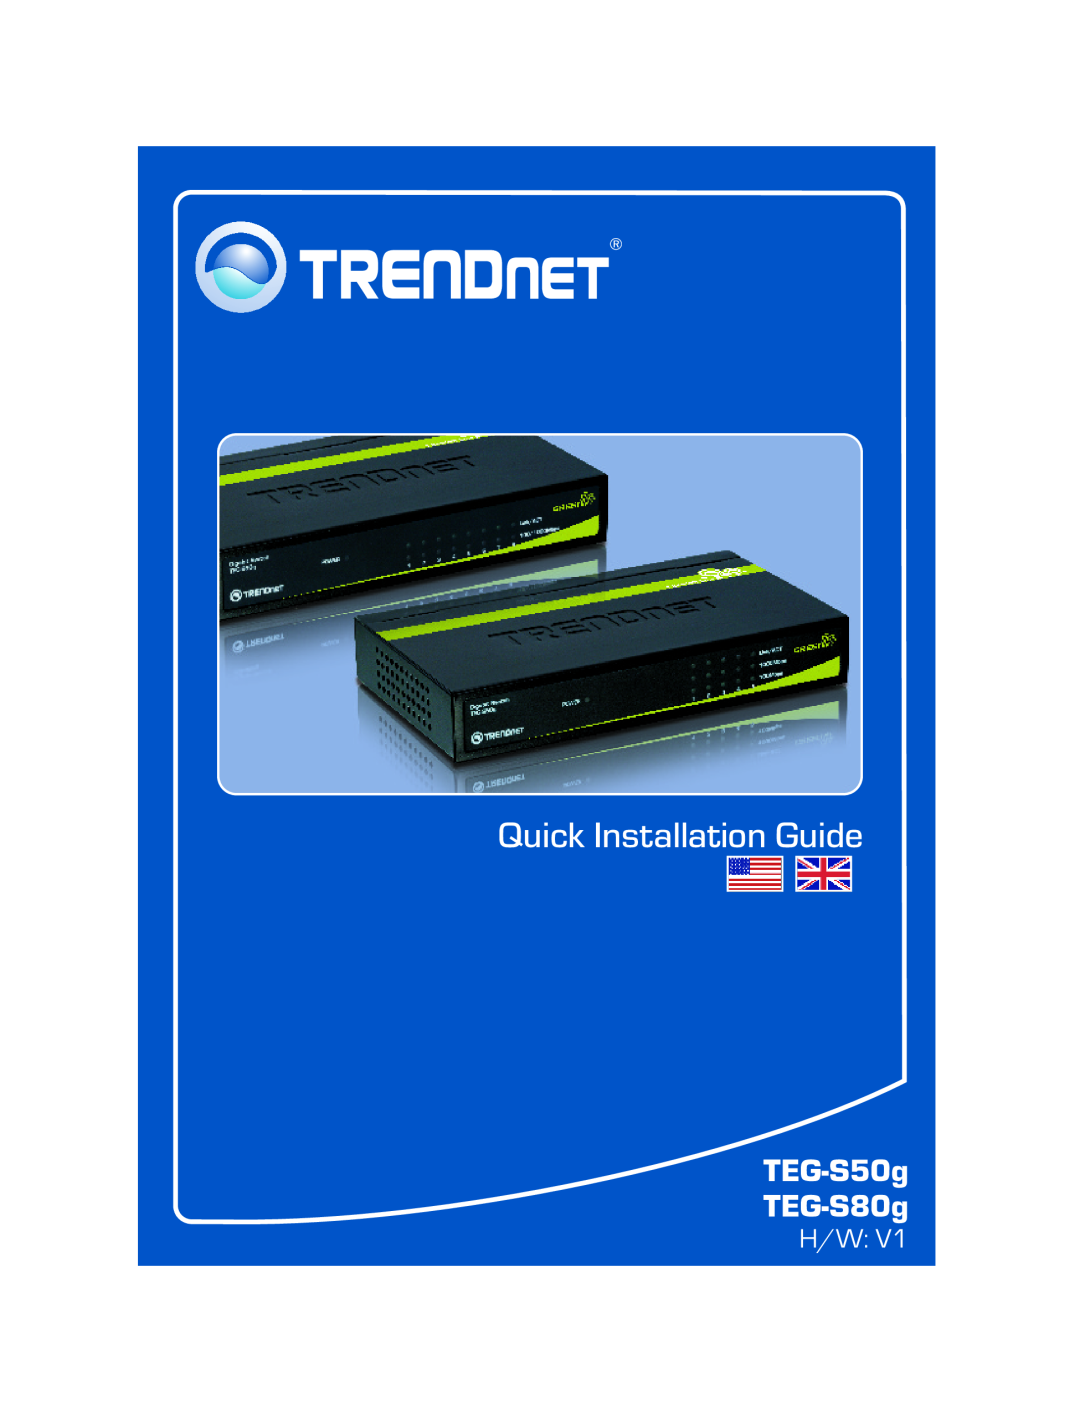 TRENDnet TEGS50G manual TEG-S50g TEG-S80g, Quick Installation Guide 